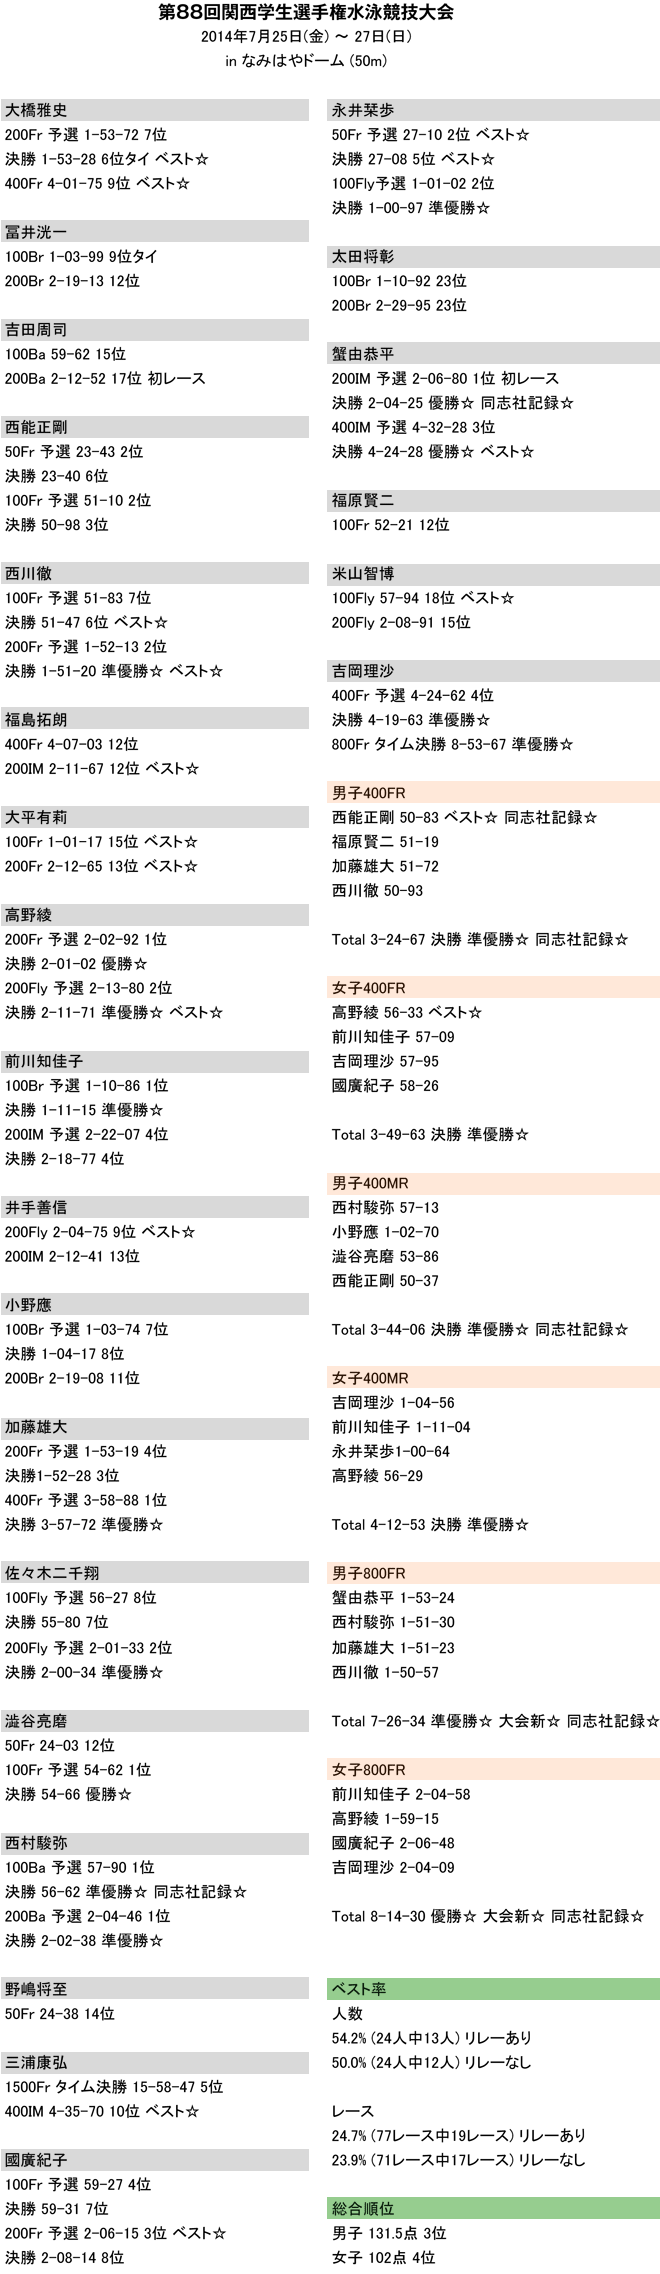 2014 関西学生選手権